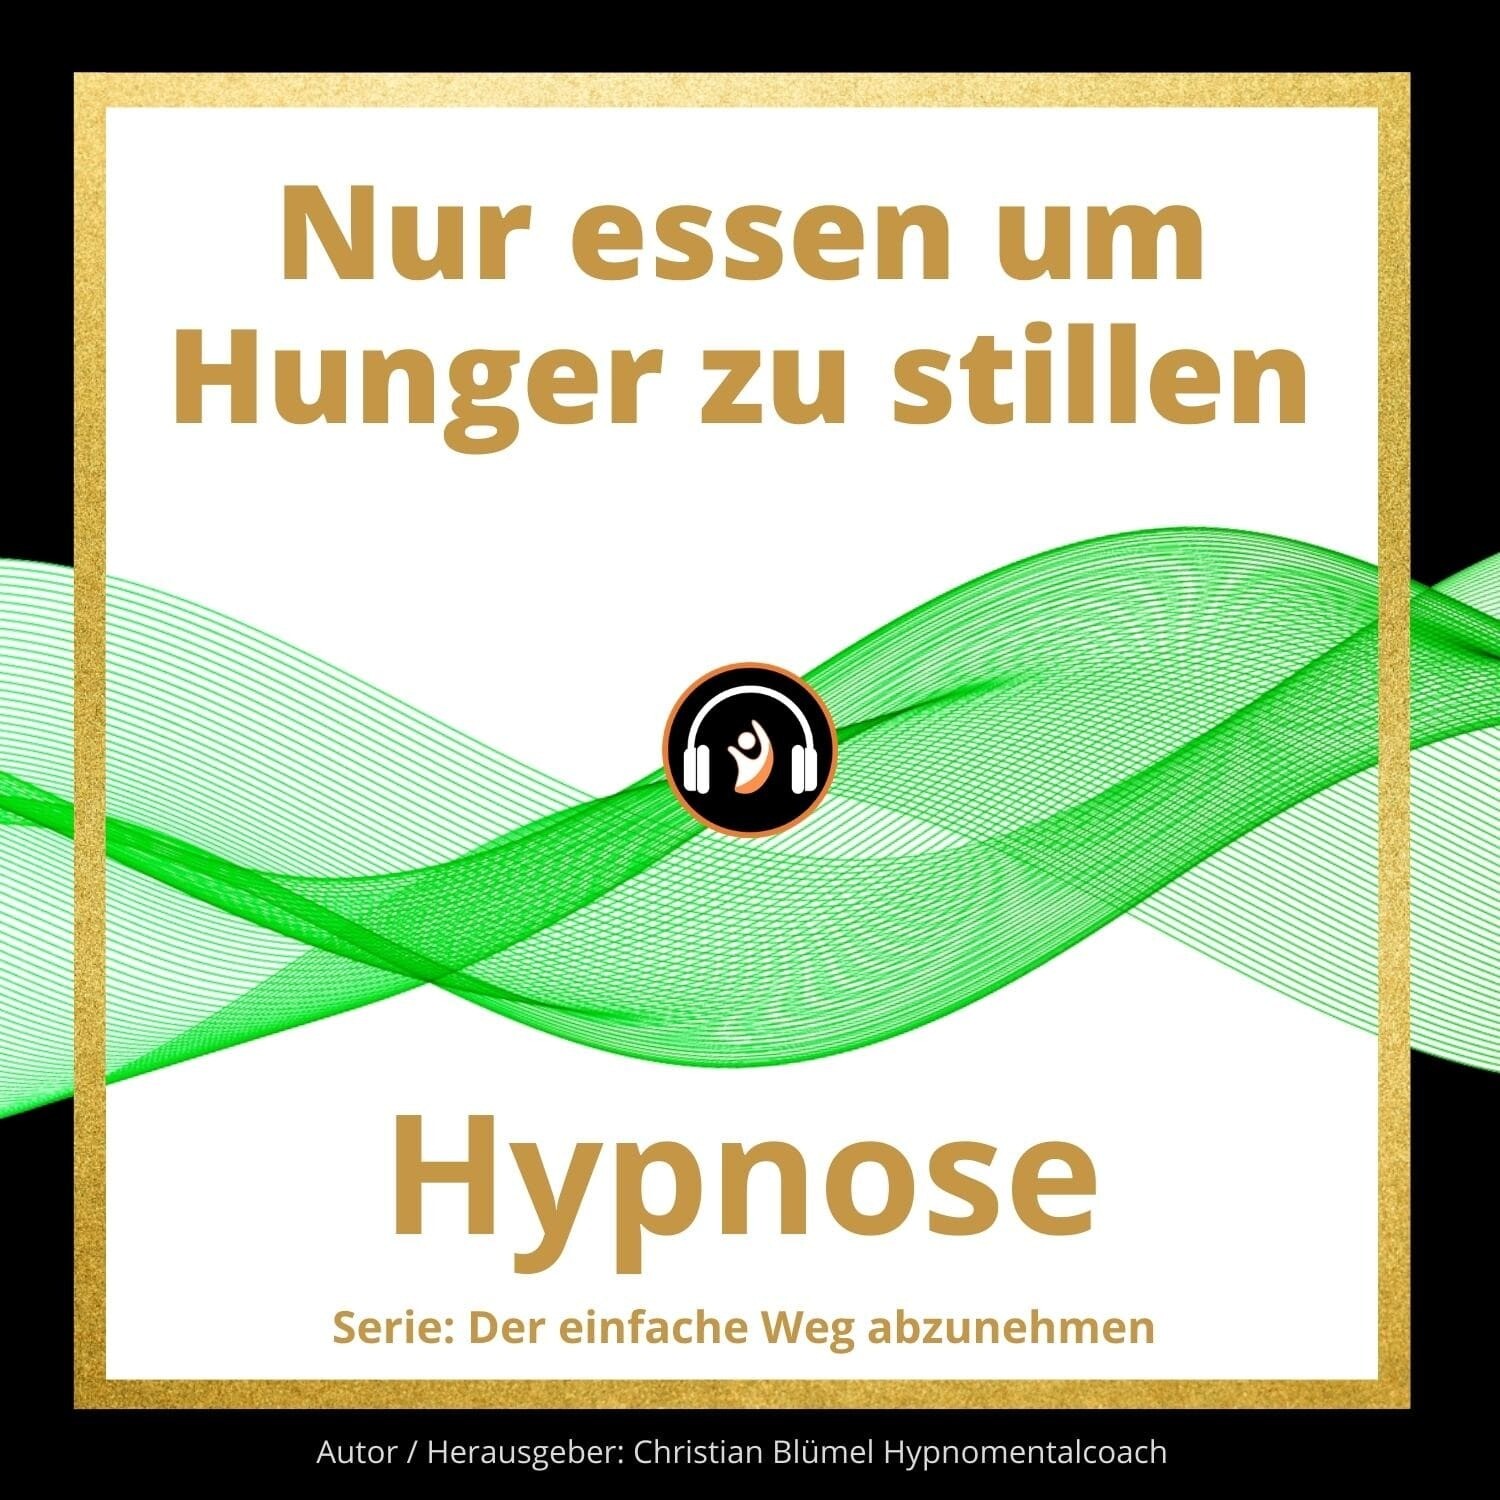 Audio Hypnose: Nur essen um Hunger zu stillen - der einfache Weg abzunehmen